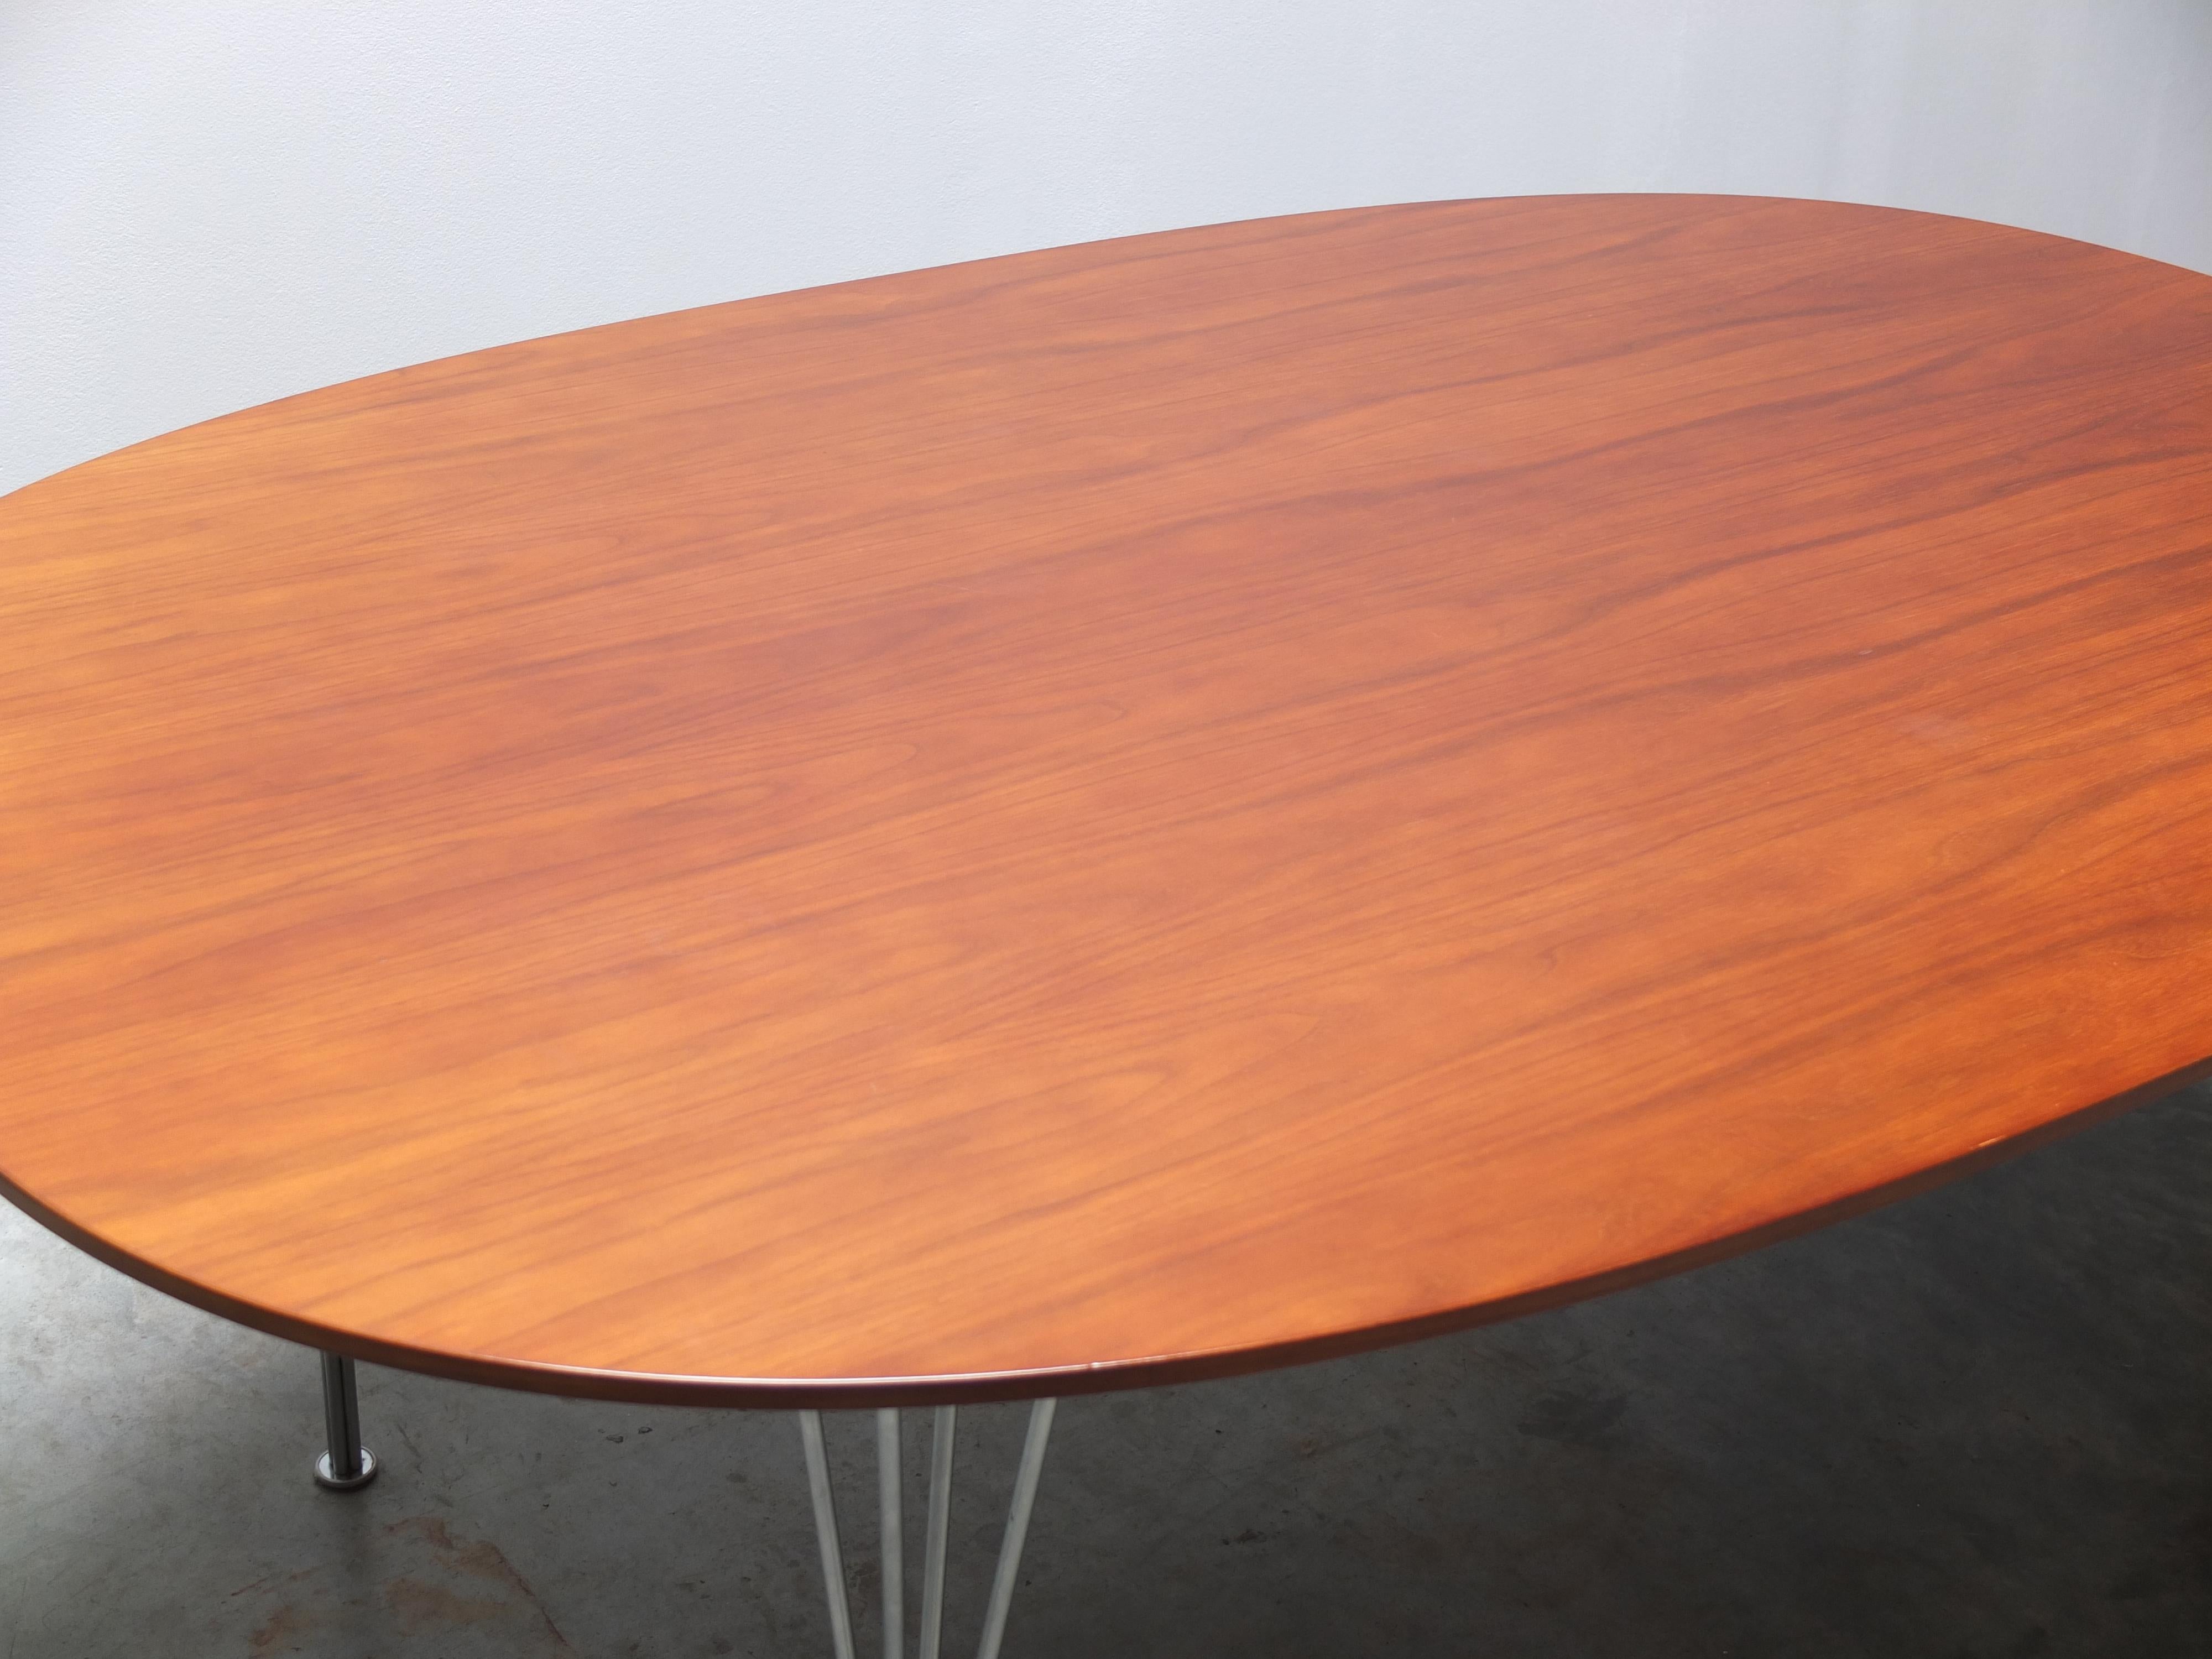 Tisch „Superellipse“ aus Nussbaumholz von Piet Hein & Bruno Mathsson für Fritz Hansen, 1960 (Stahl)